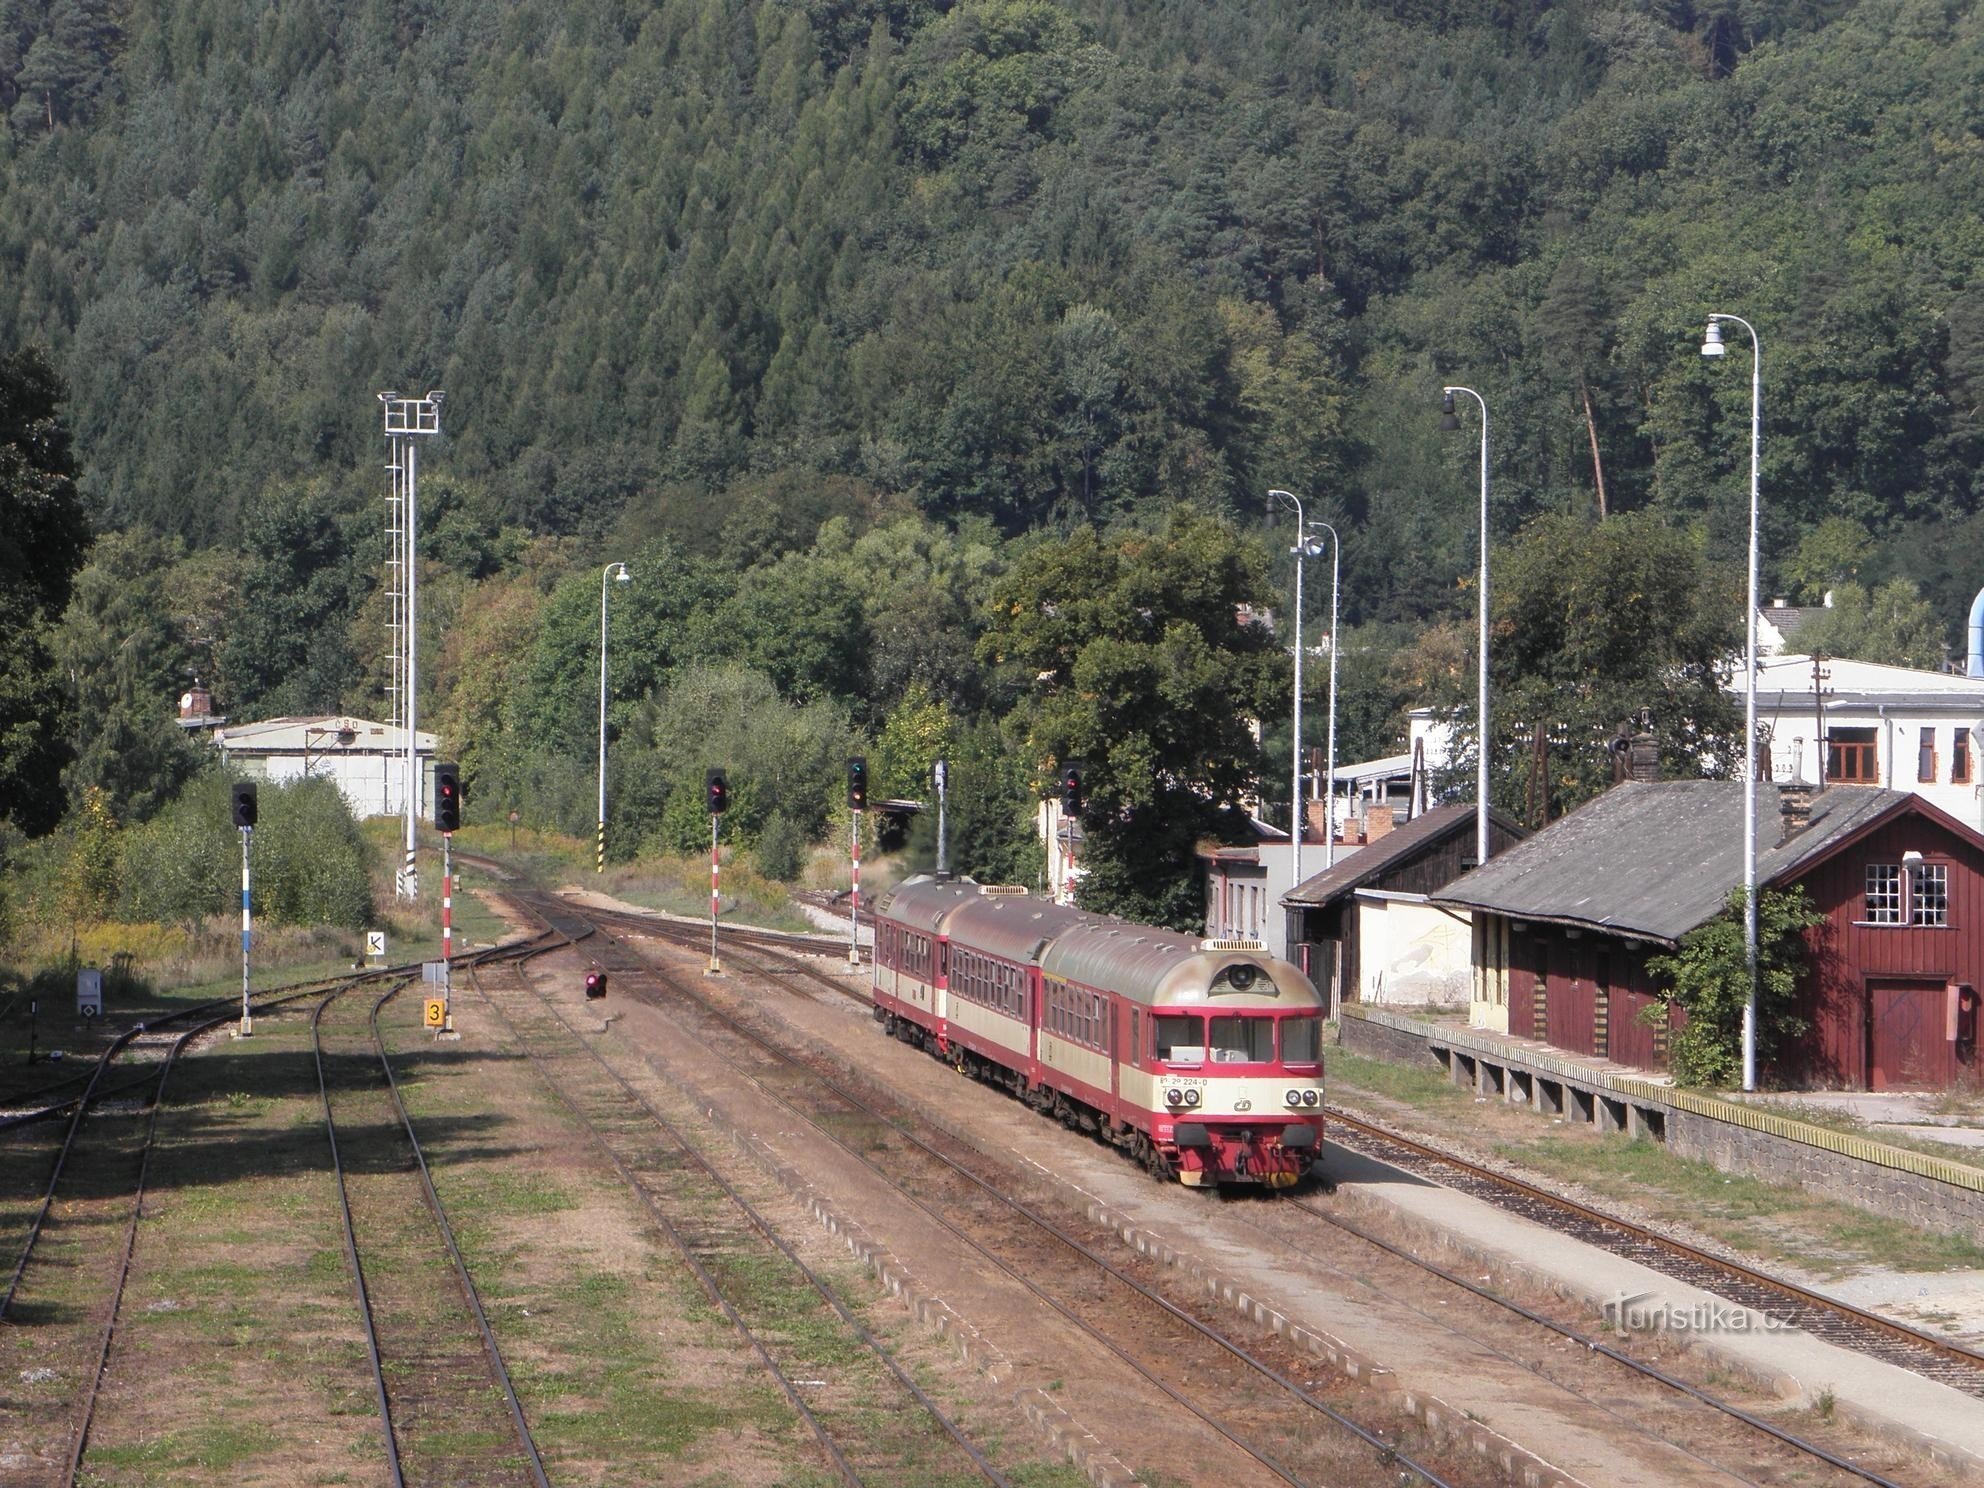 Estação ferroviária perto de Brno - 17.9.2011